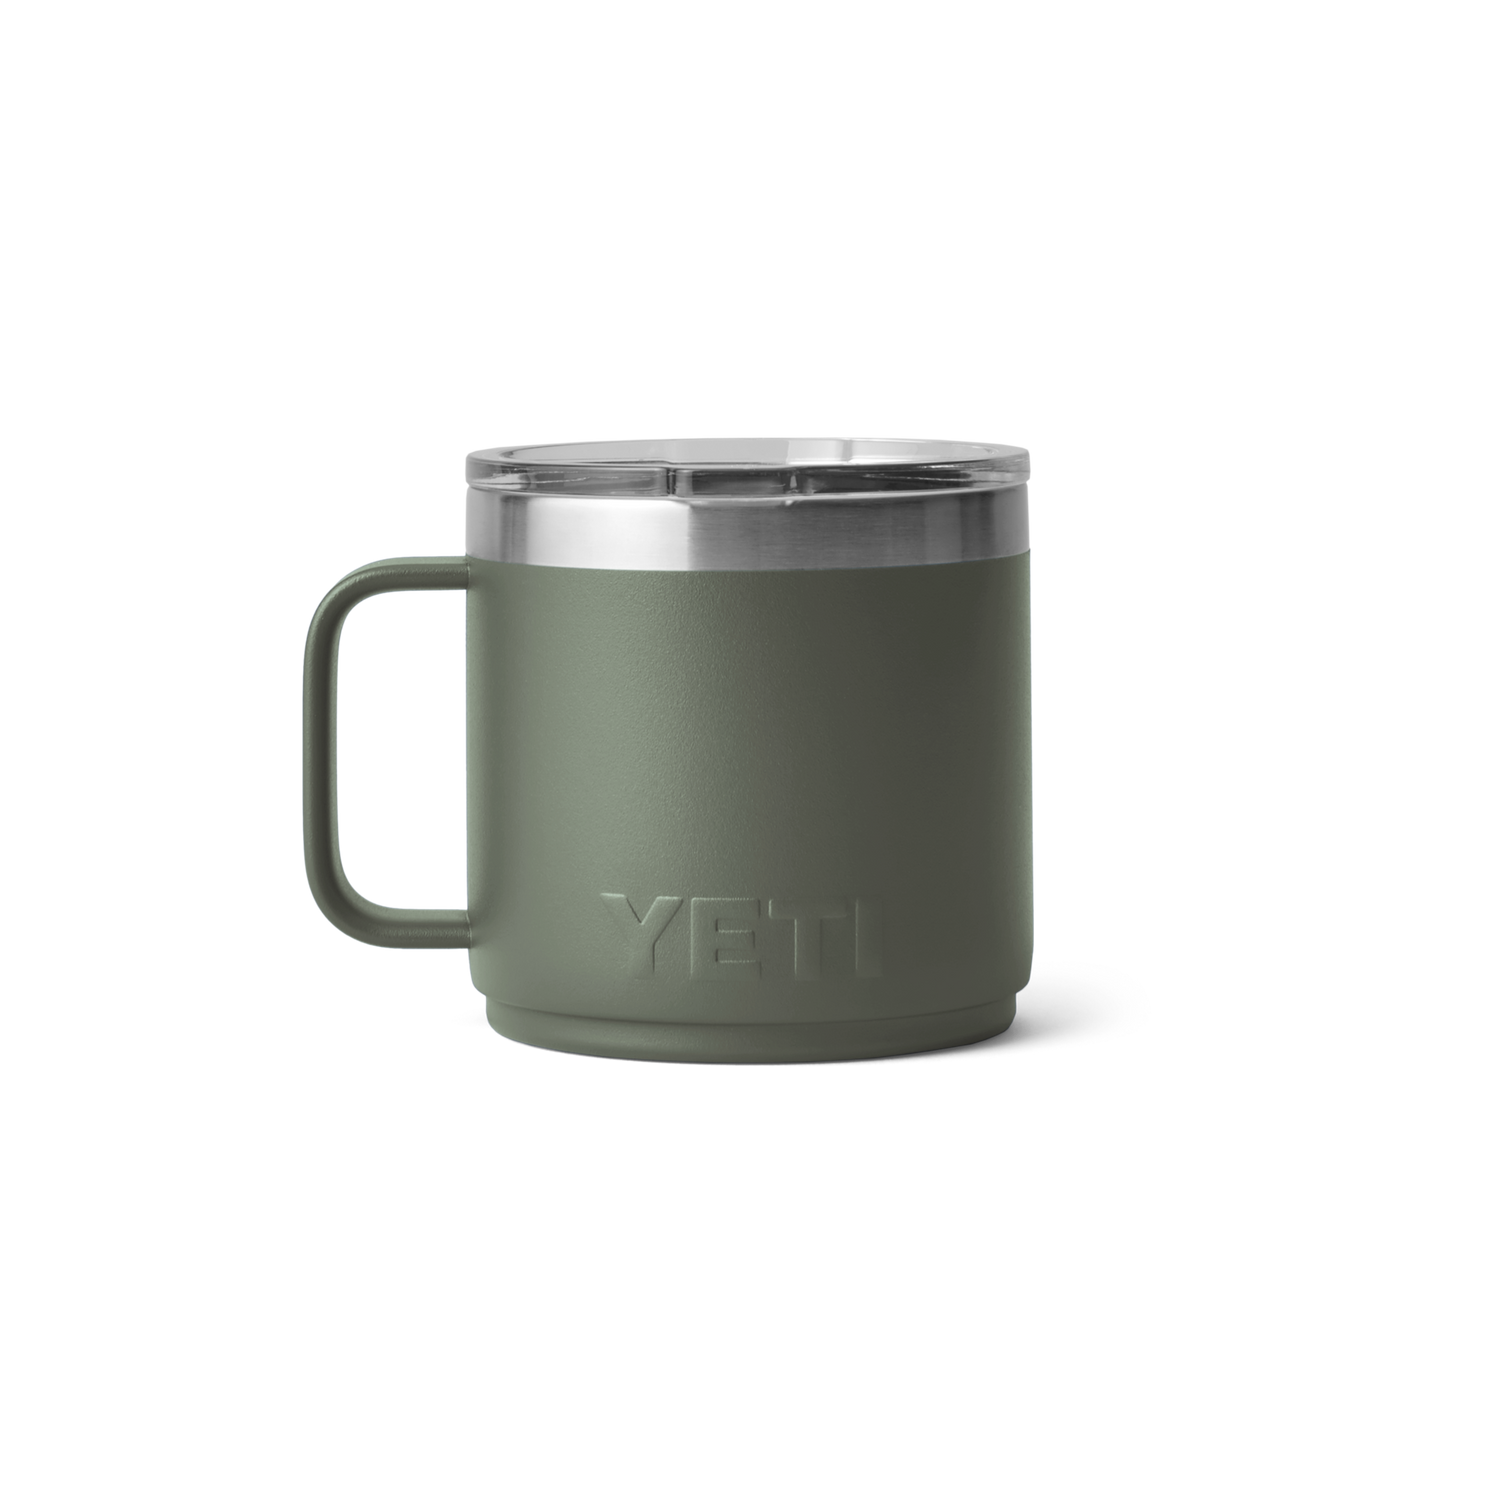 Yeti Rambler 14-Ounce Mug